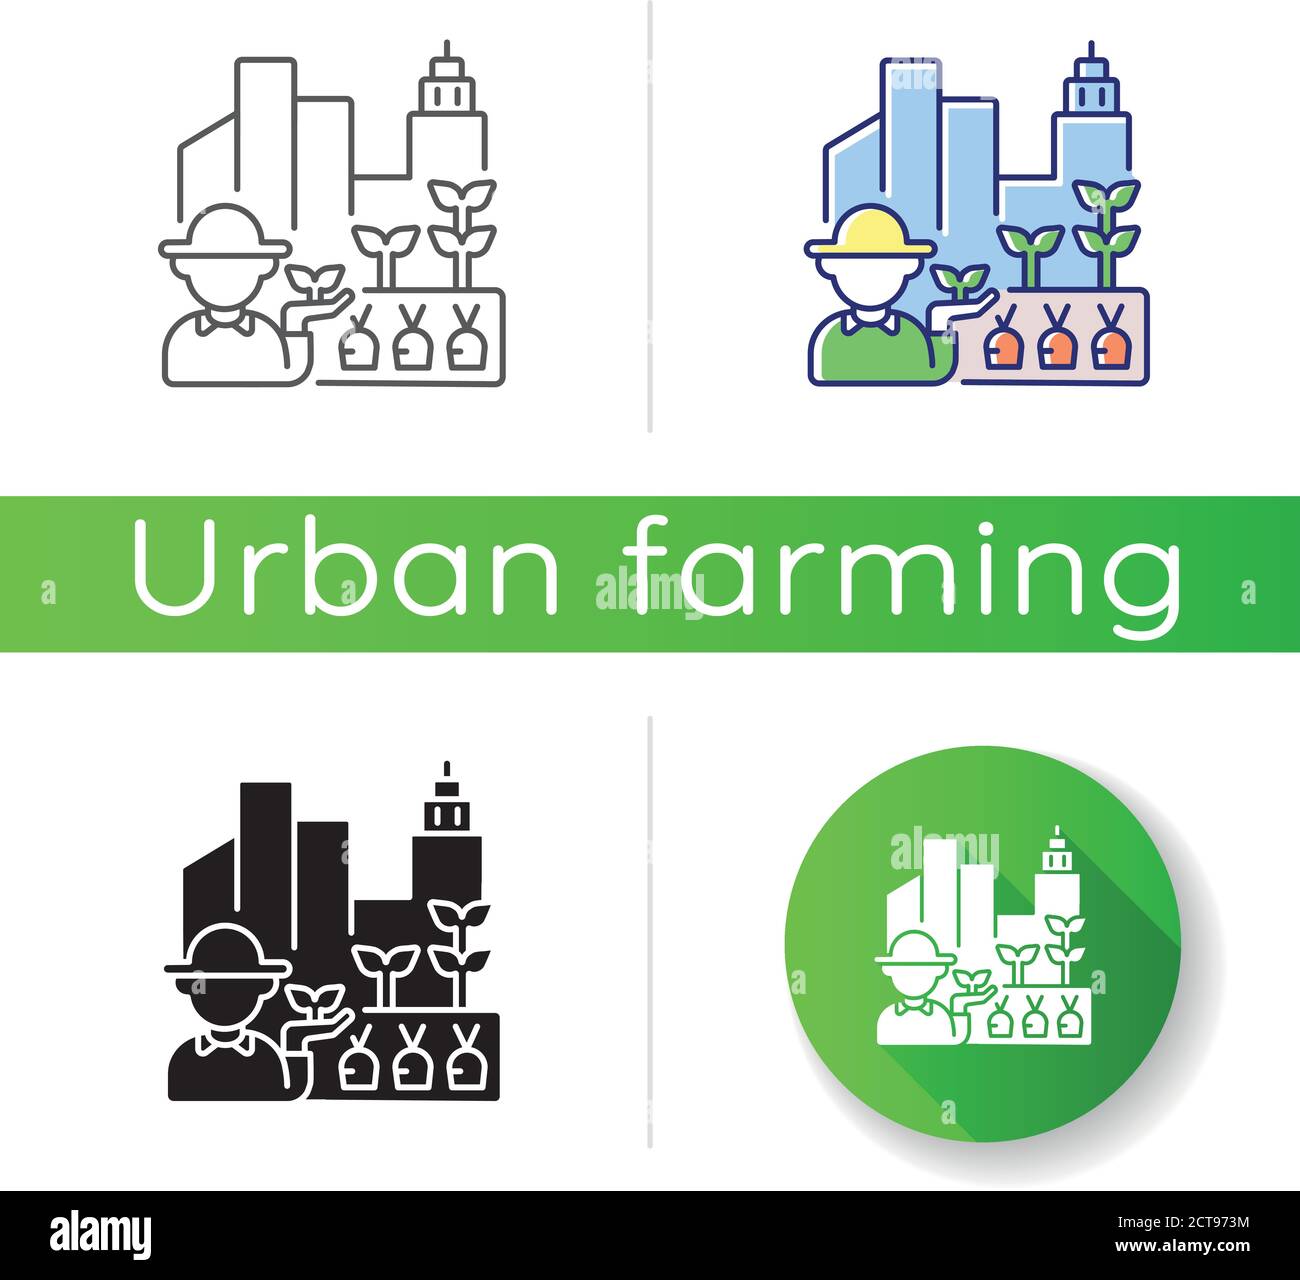 Urban farm icon Stock Vector